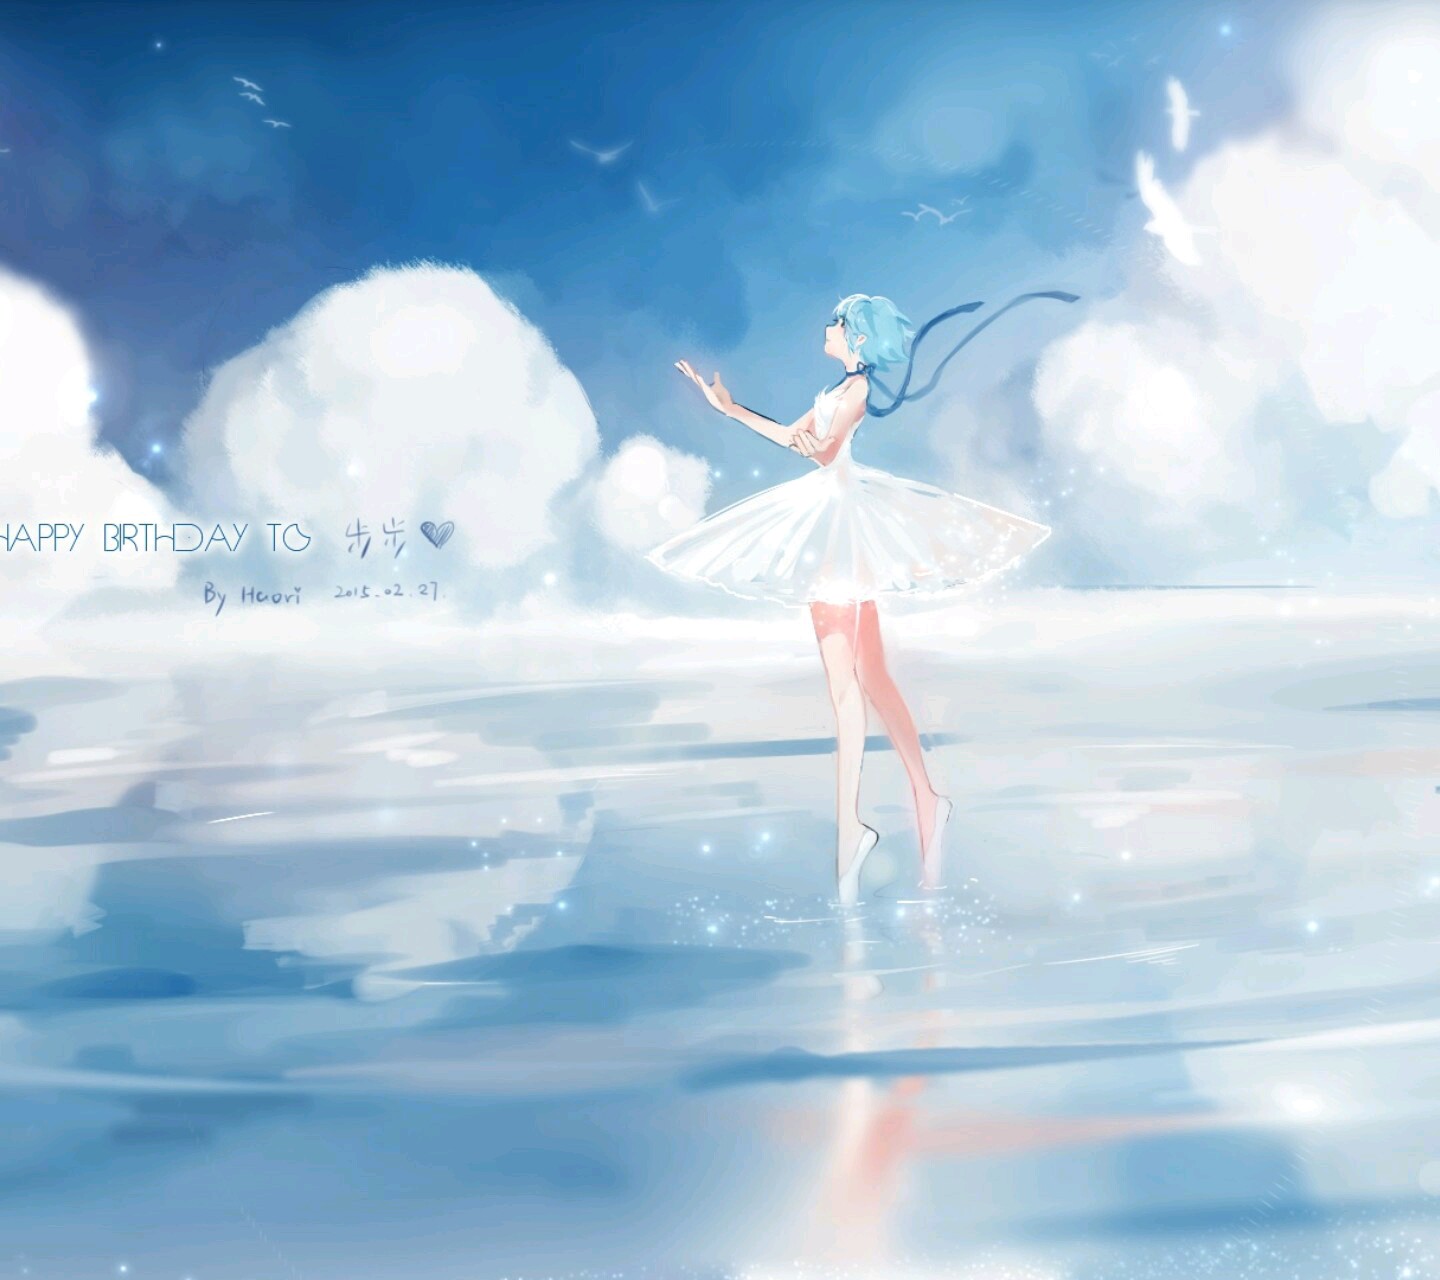 二次元 p站 天空 白云 人物 少女 海边 芭蕾 风景 场景 唯美 壁纸